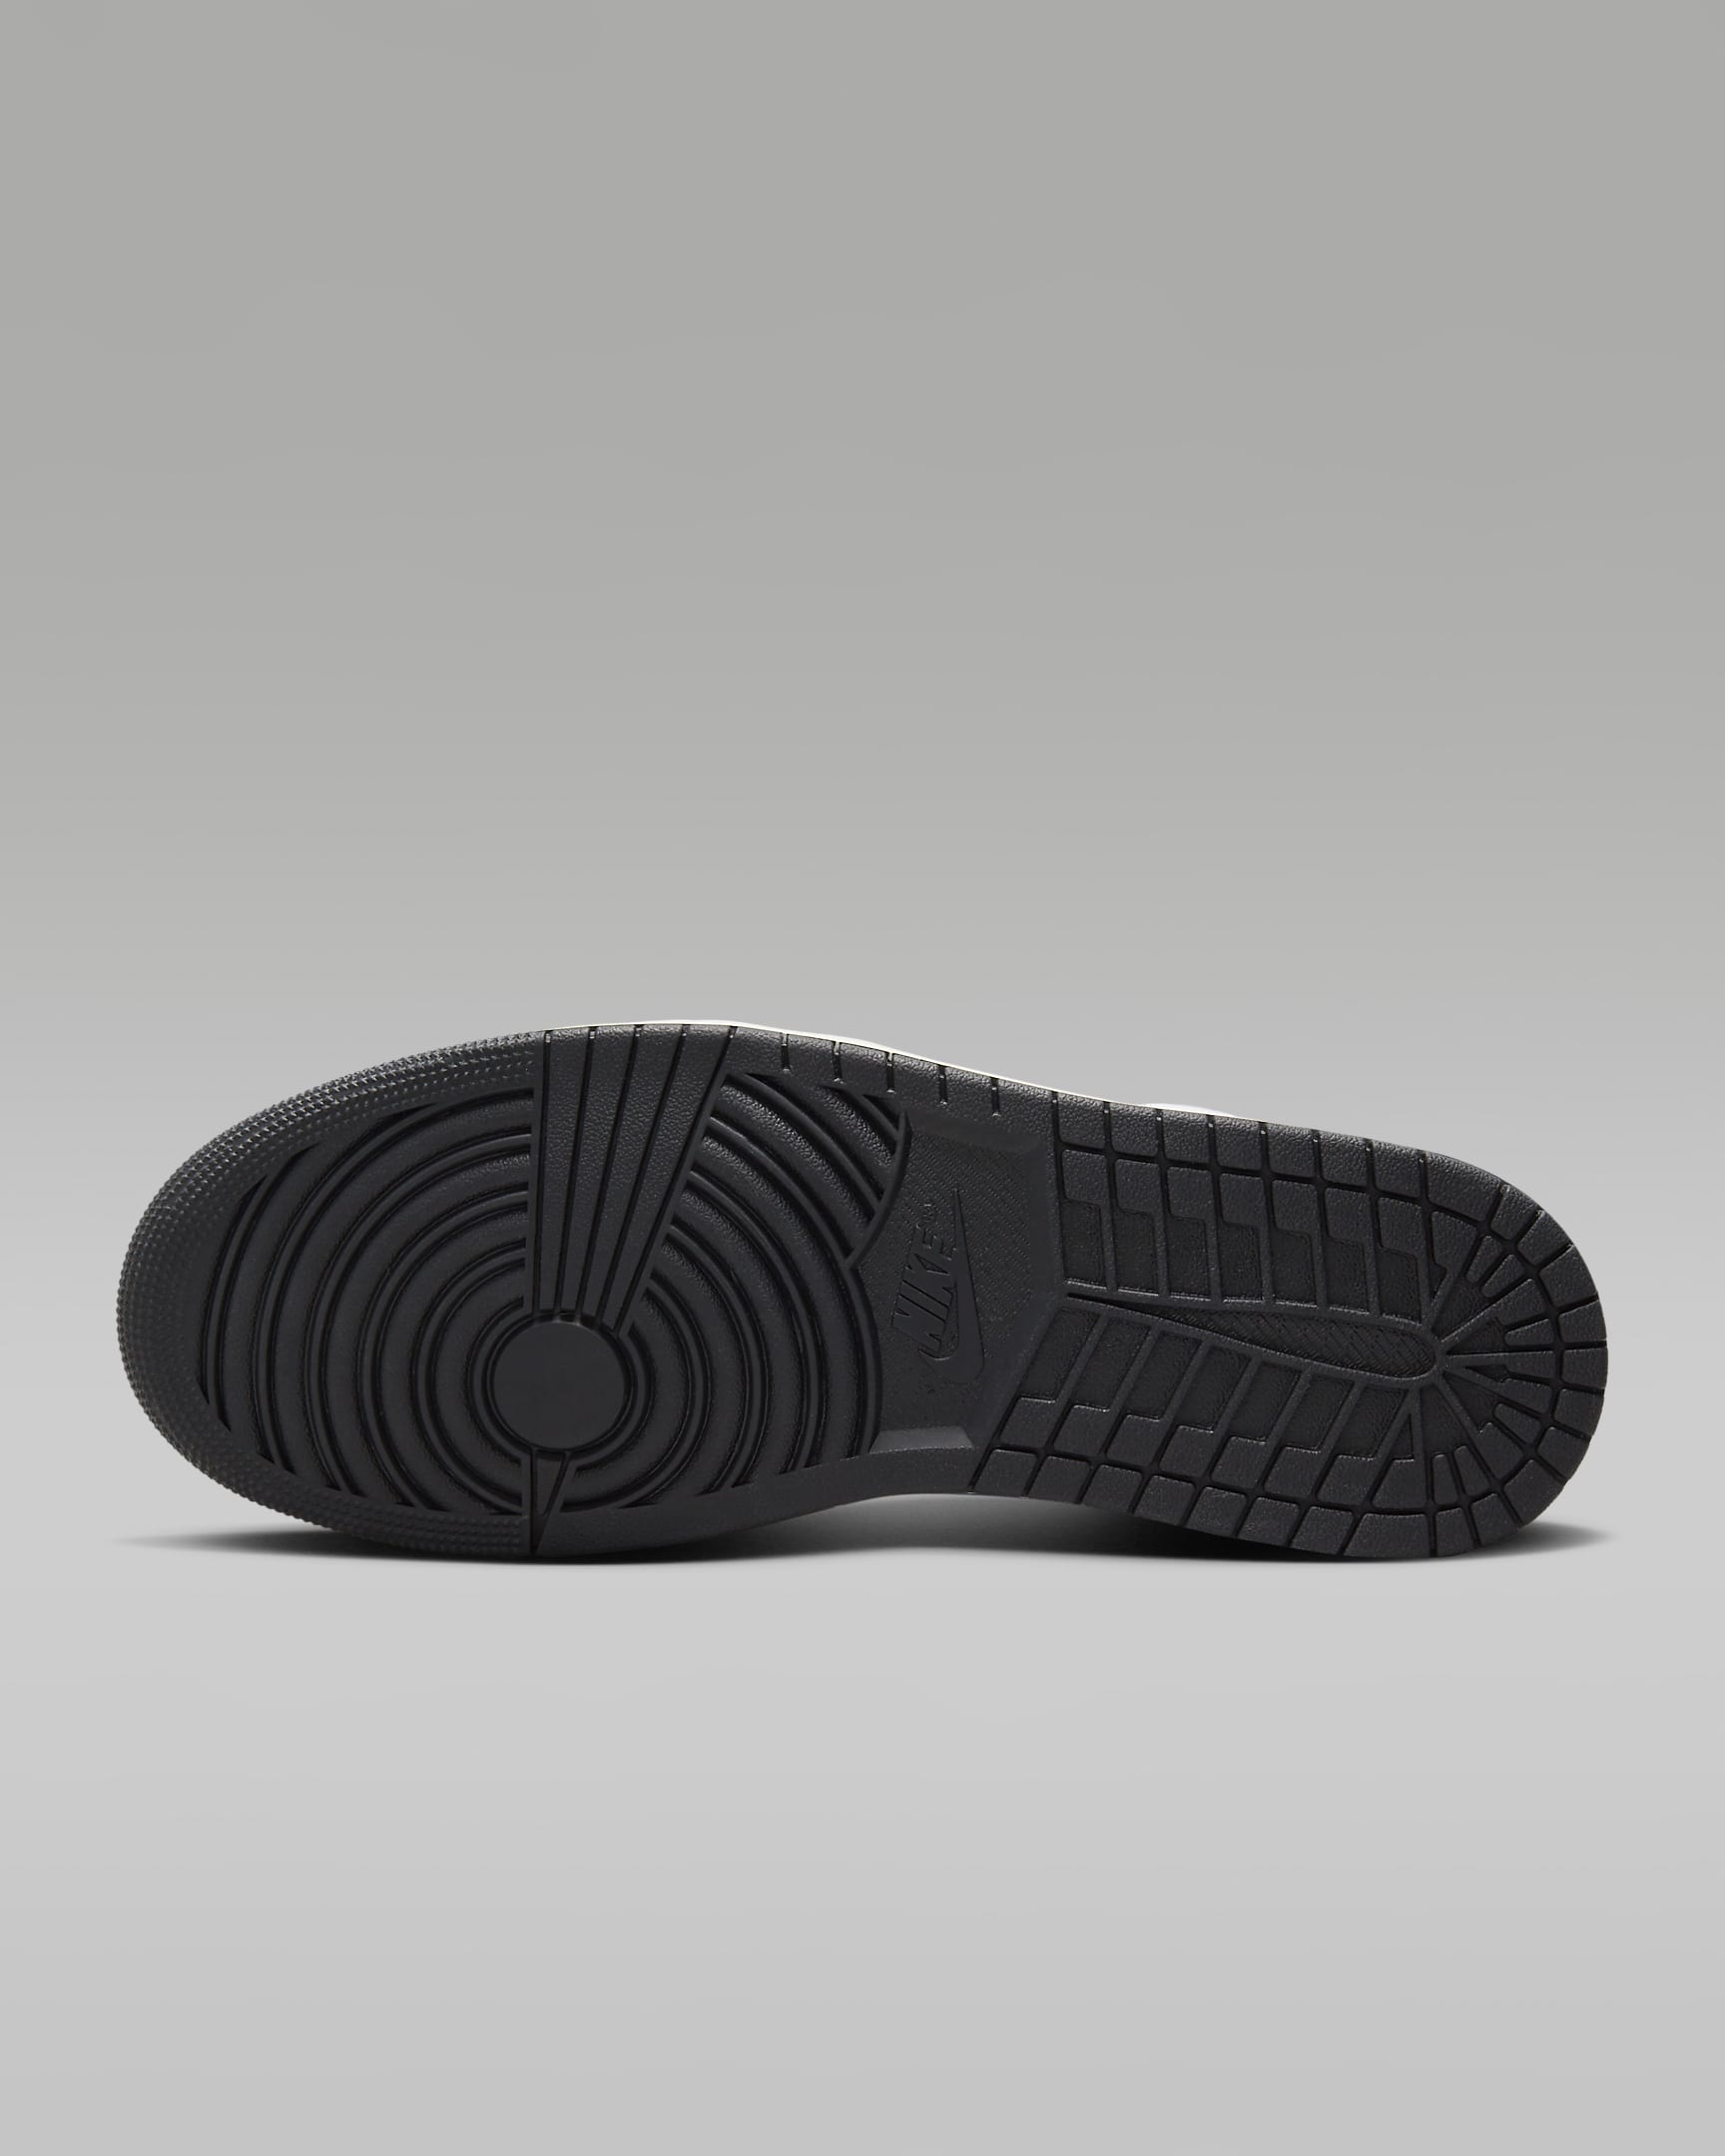 Air Jordan 1 Low SE Men's Shoes - White/Black/Sail/Blue Grey